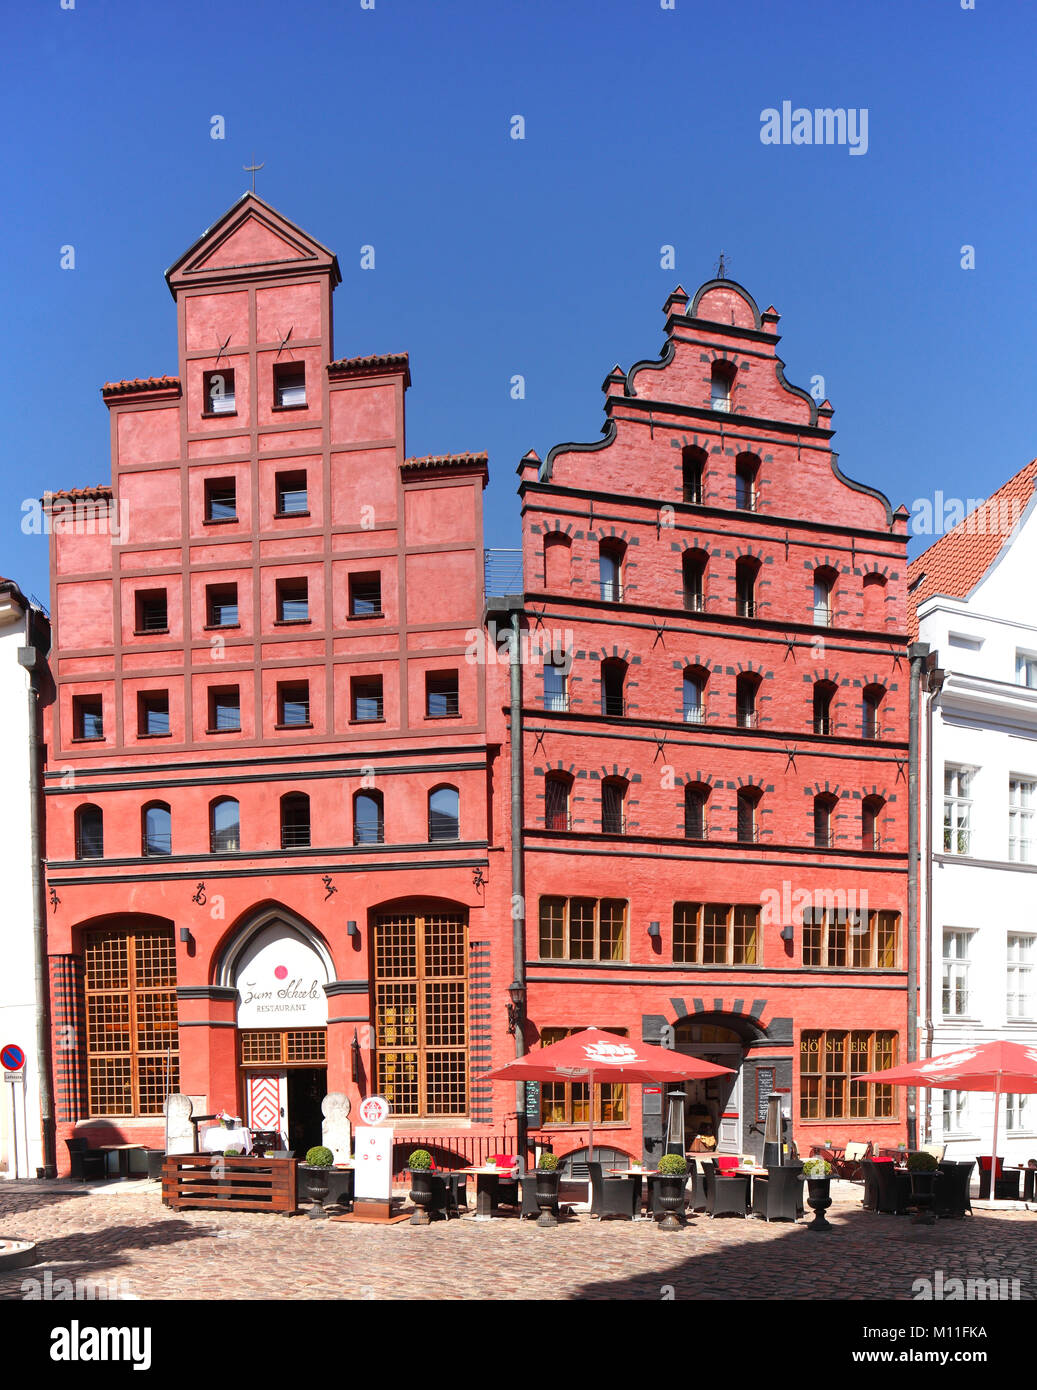 Altes Haus Fassade Scheelhaus, Stralsund, Mecklenburg-Vorpommern, Deutschland, Europa ich Scheelhaus, Restaurant zum Scheele, Historisches Giebelhaus in Stockfoto